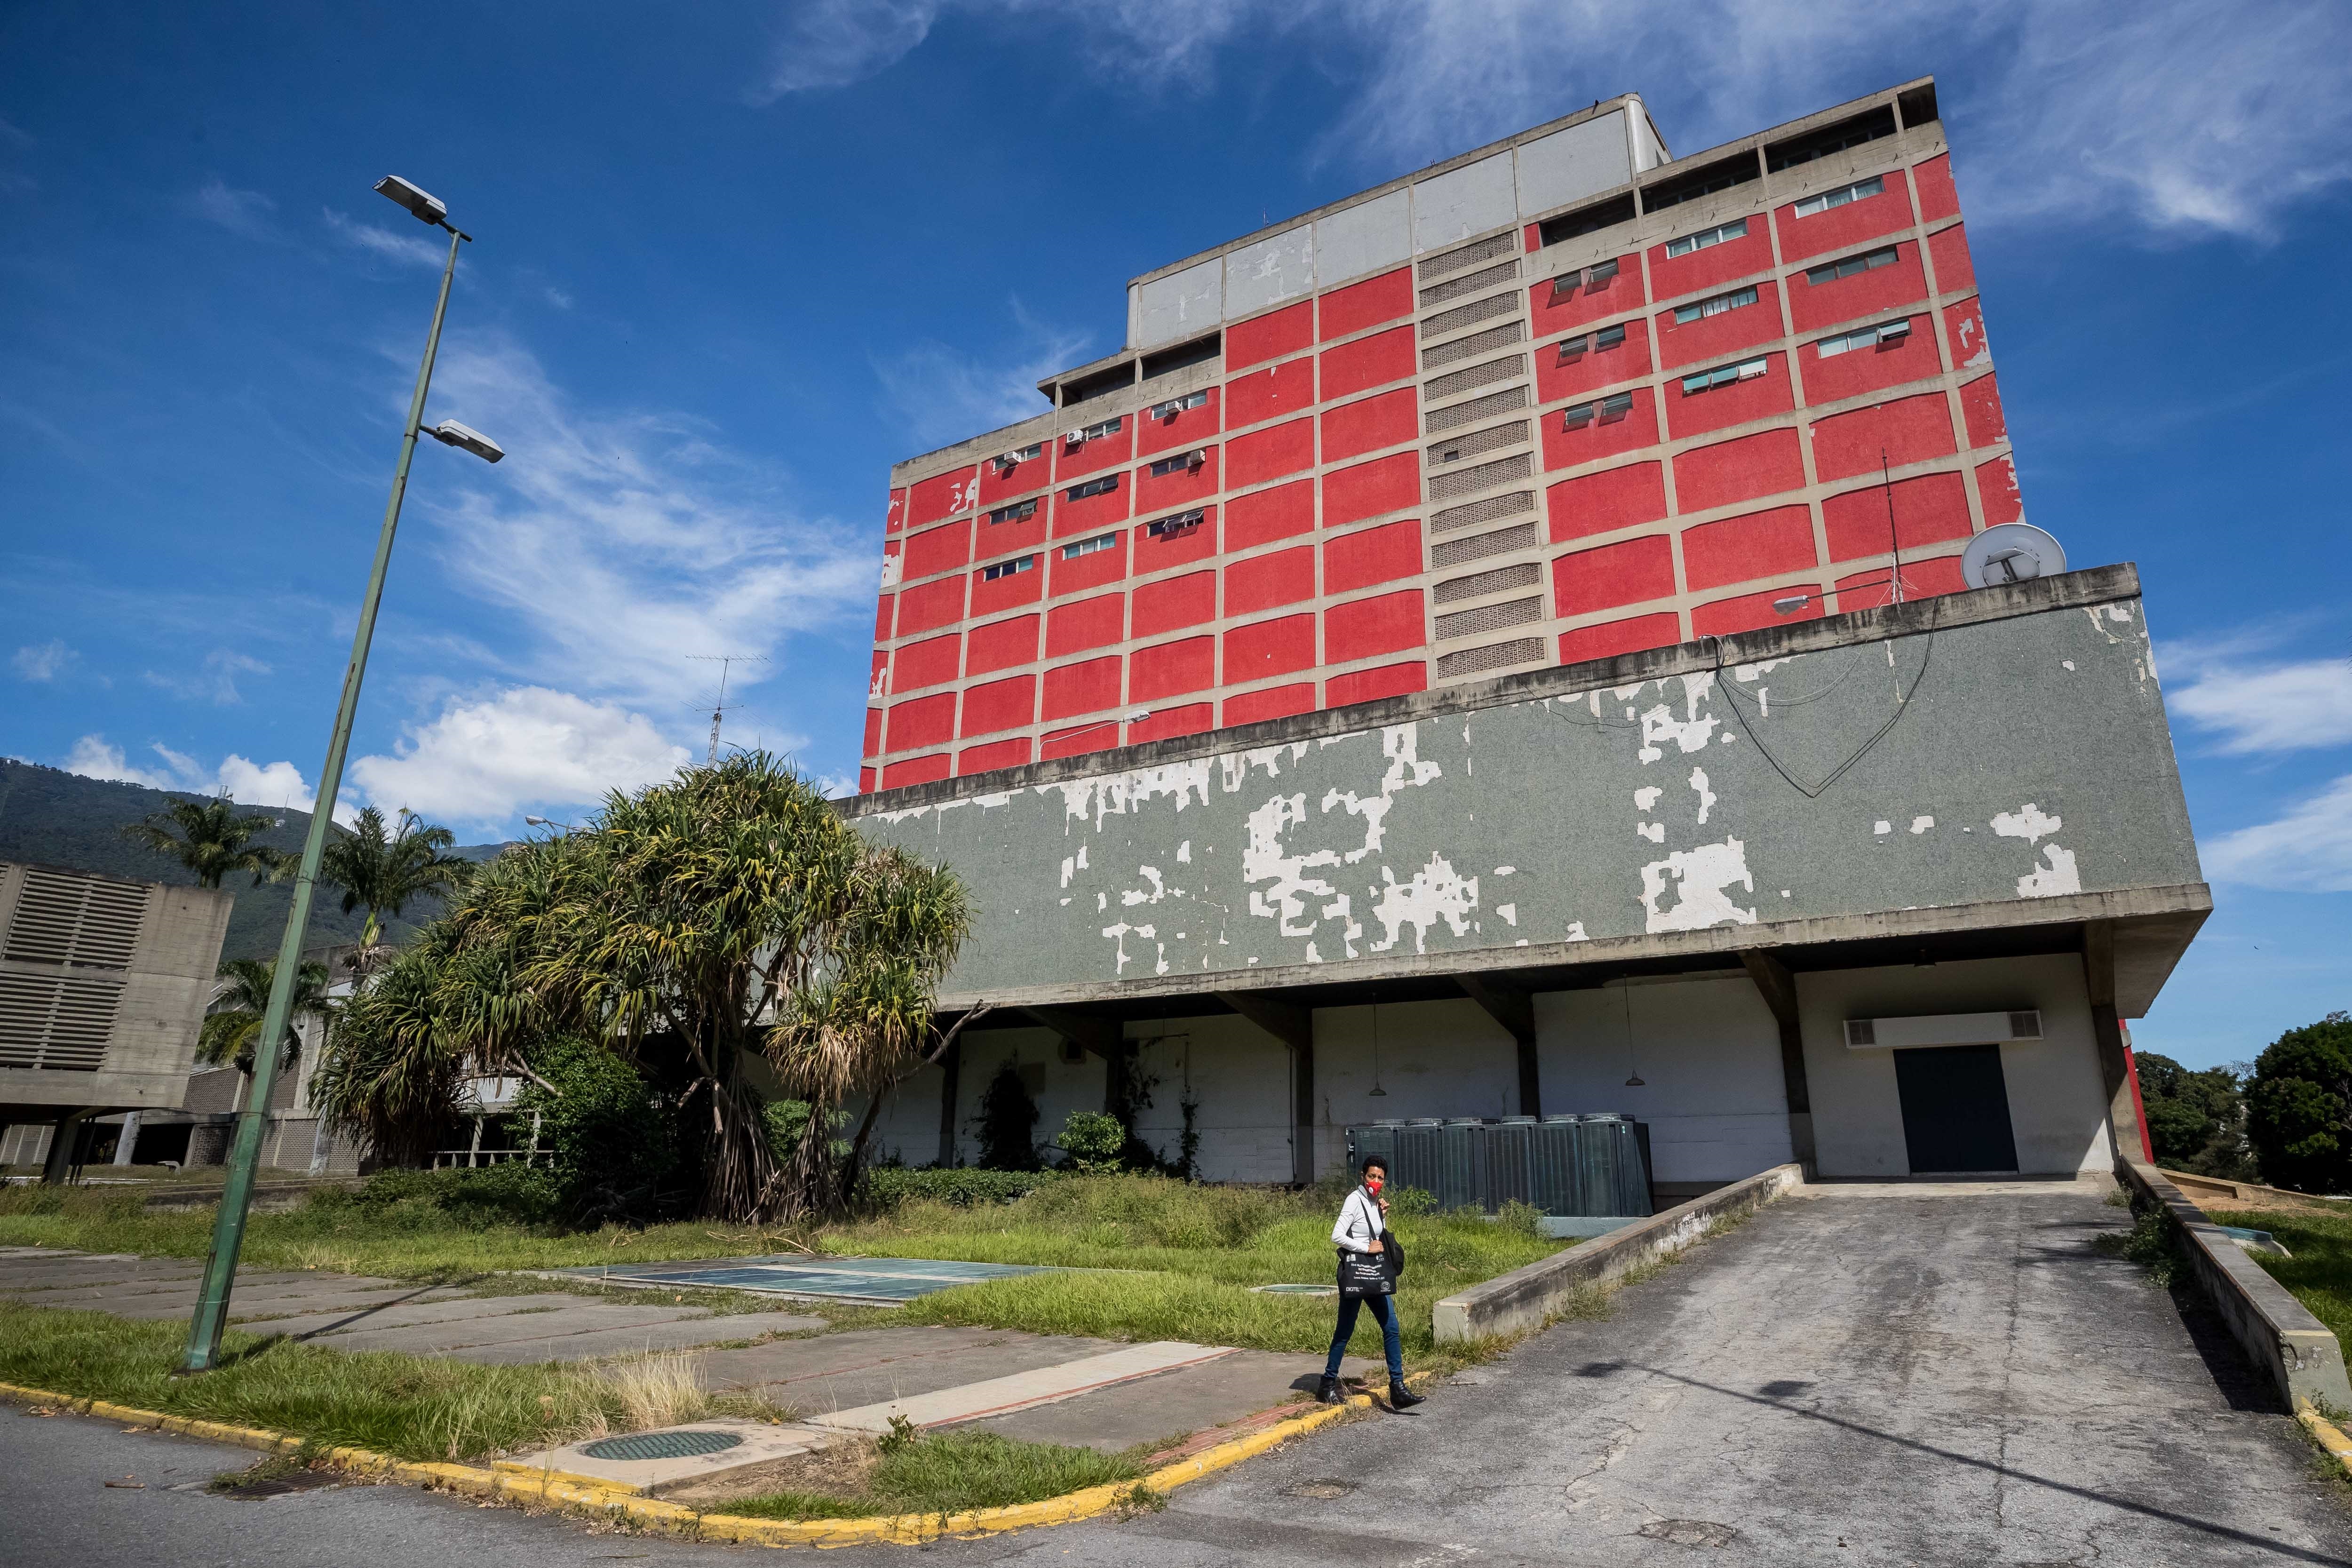 El lamentable deterioro de la Ciudad Universitaria, joya arquitectónica y referente educativo de Venezuela (FOTOS)